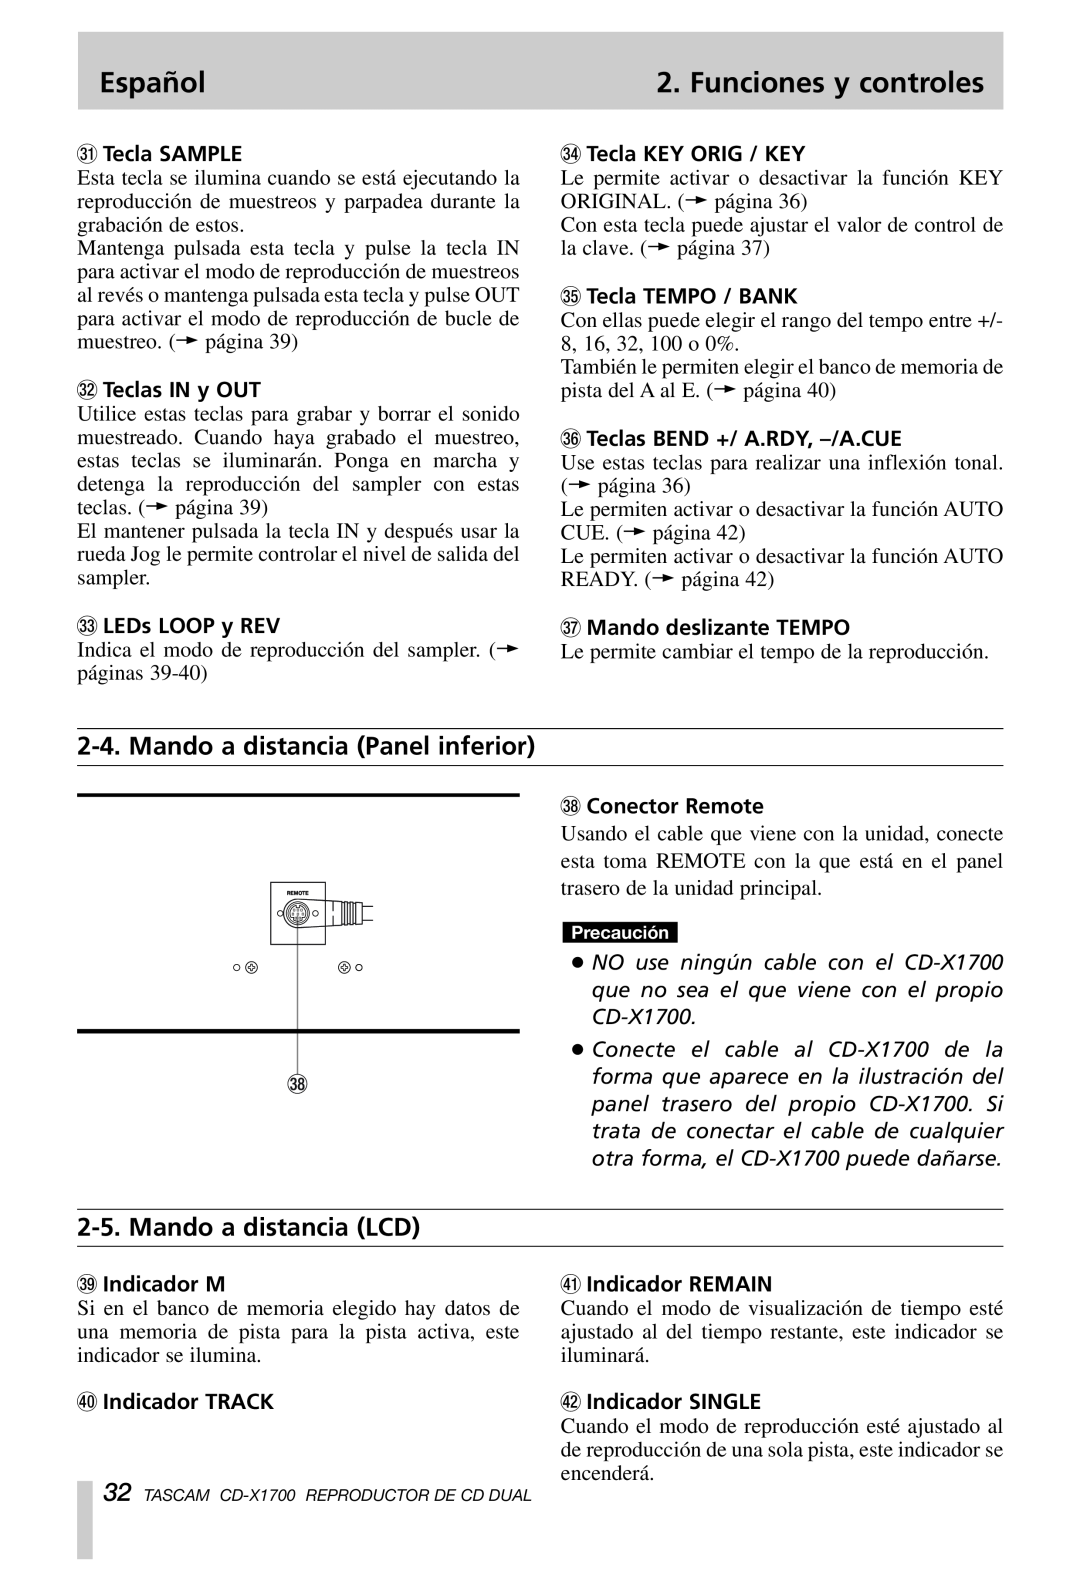 Tascam CD-X1700 owner manual Mando a distancia Panel inferior, Mando a distancia LCD, Español, Funciones y controles 